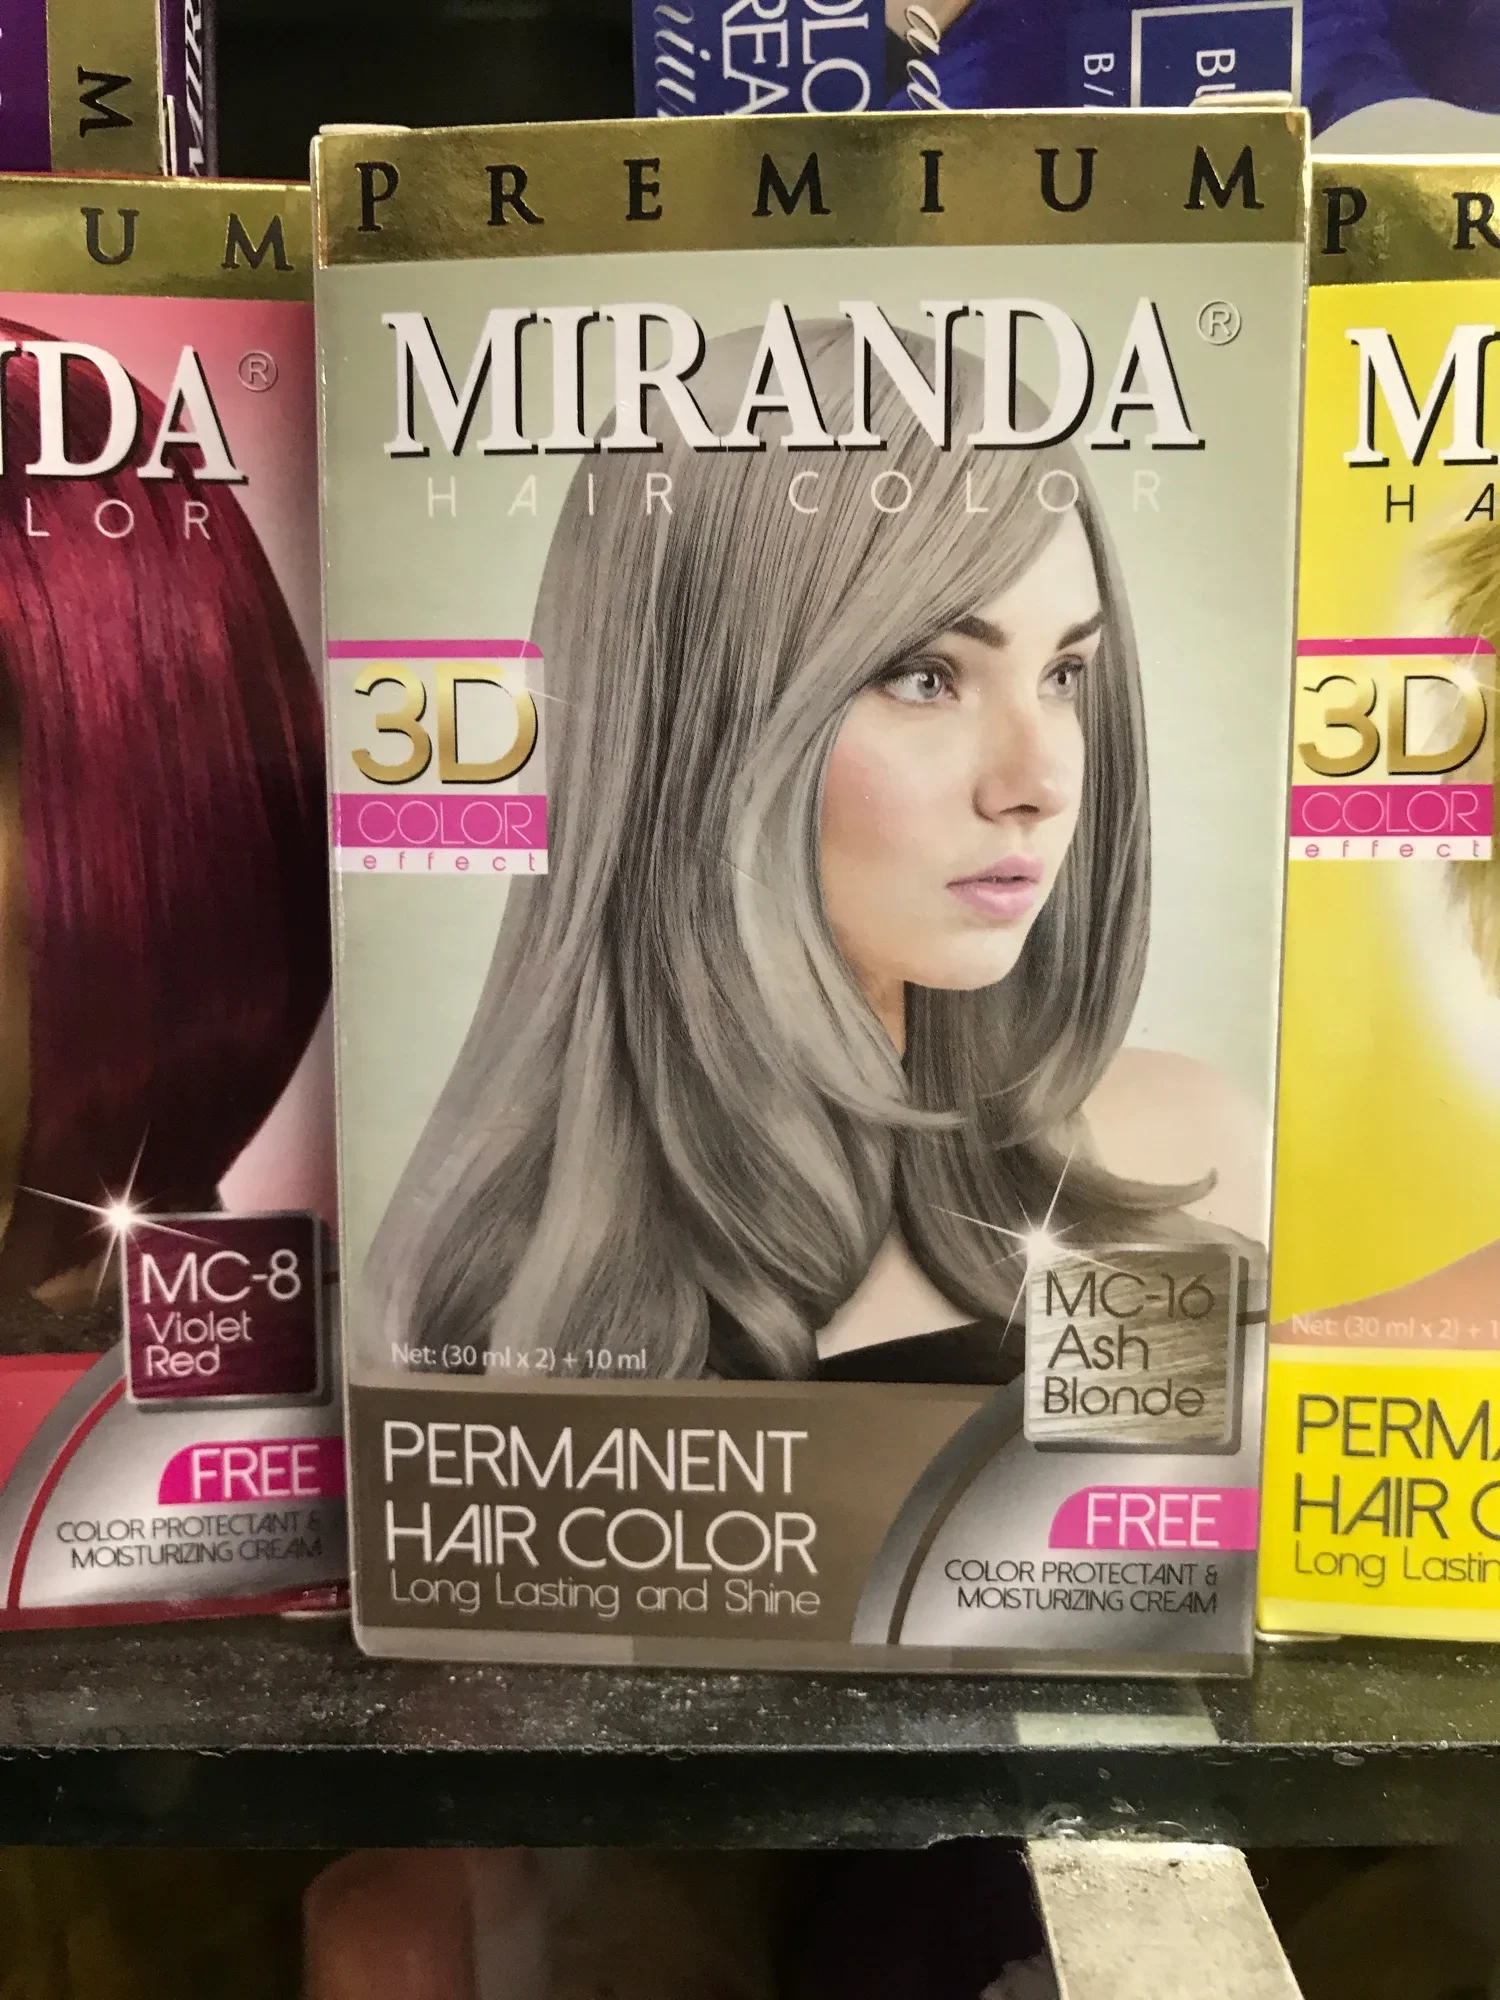 Ash blonde-Miranda hair colour (30ml*2+10ml)